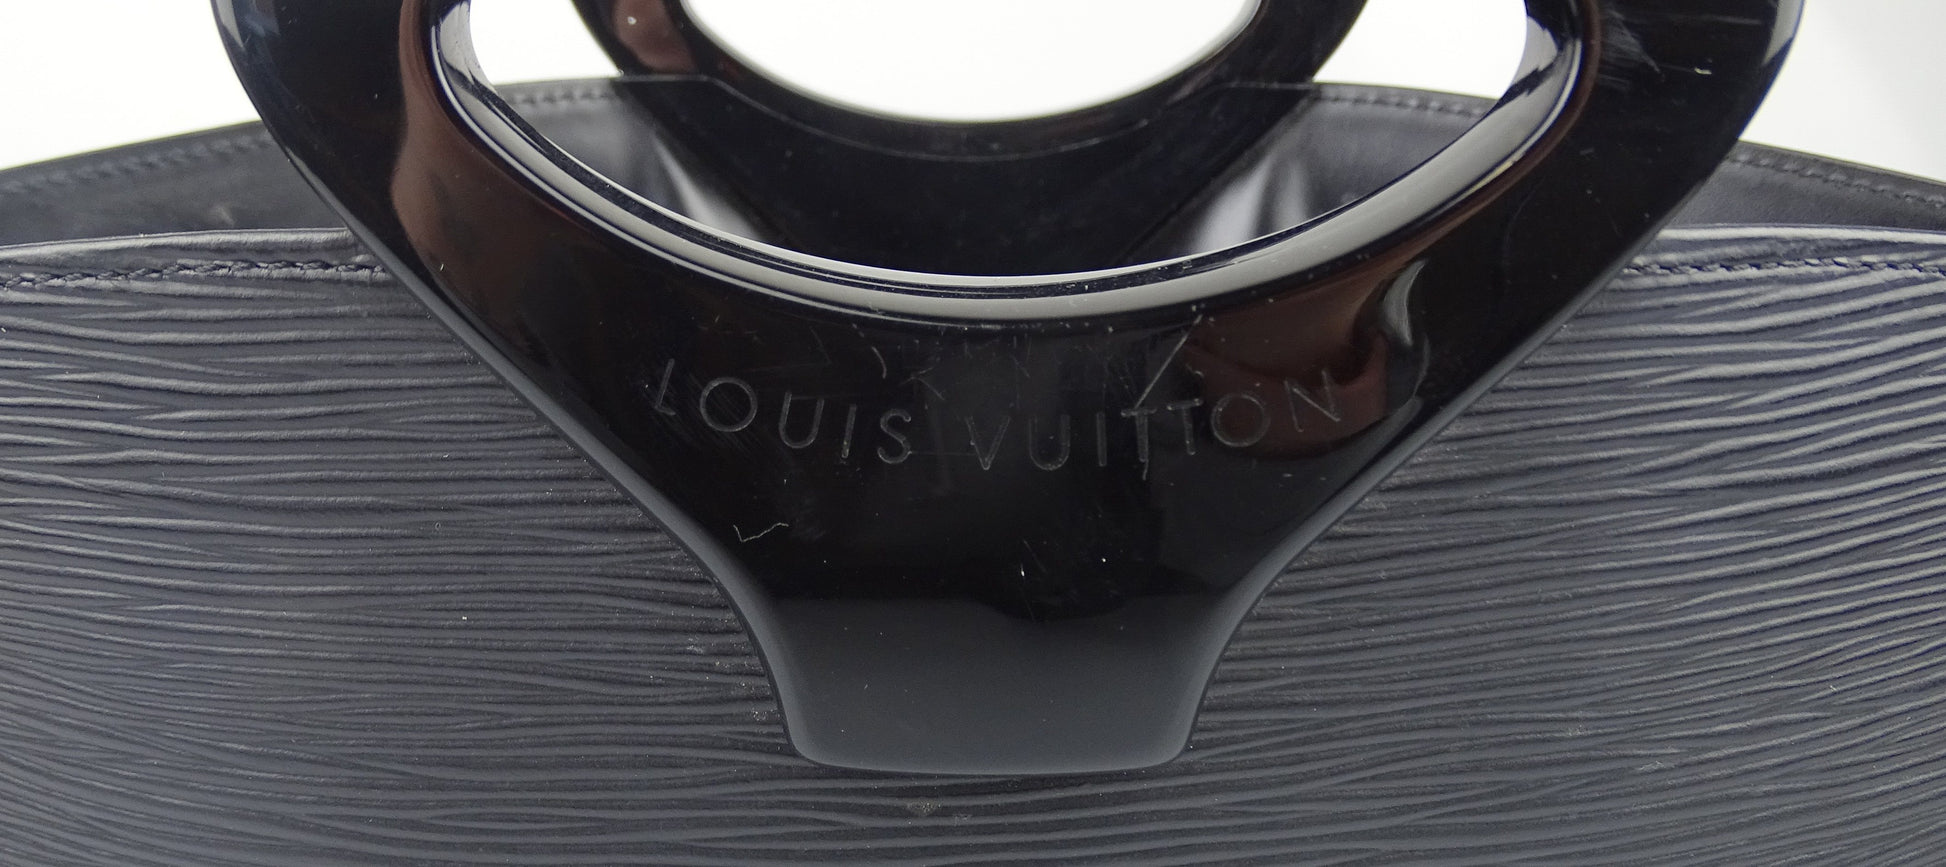 RDC12831 Authentic Louis Vuitton Vintage Black Epi Leather Noe GM